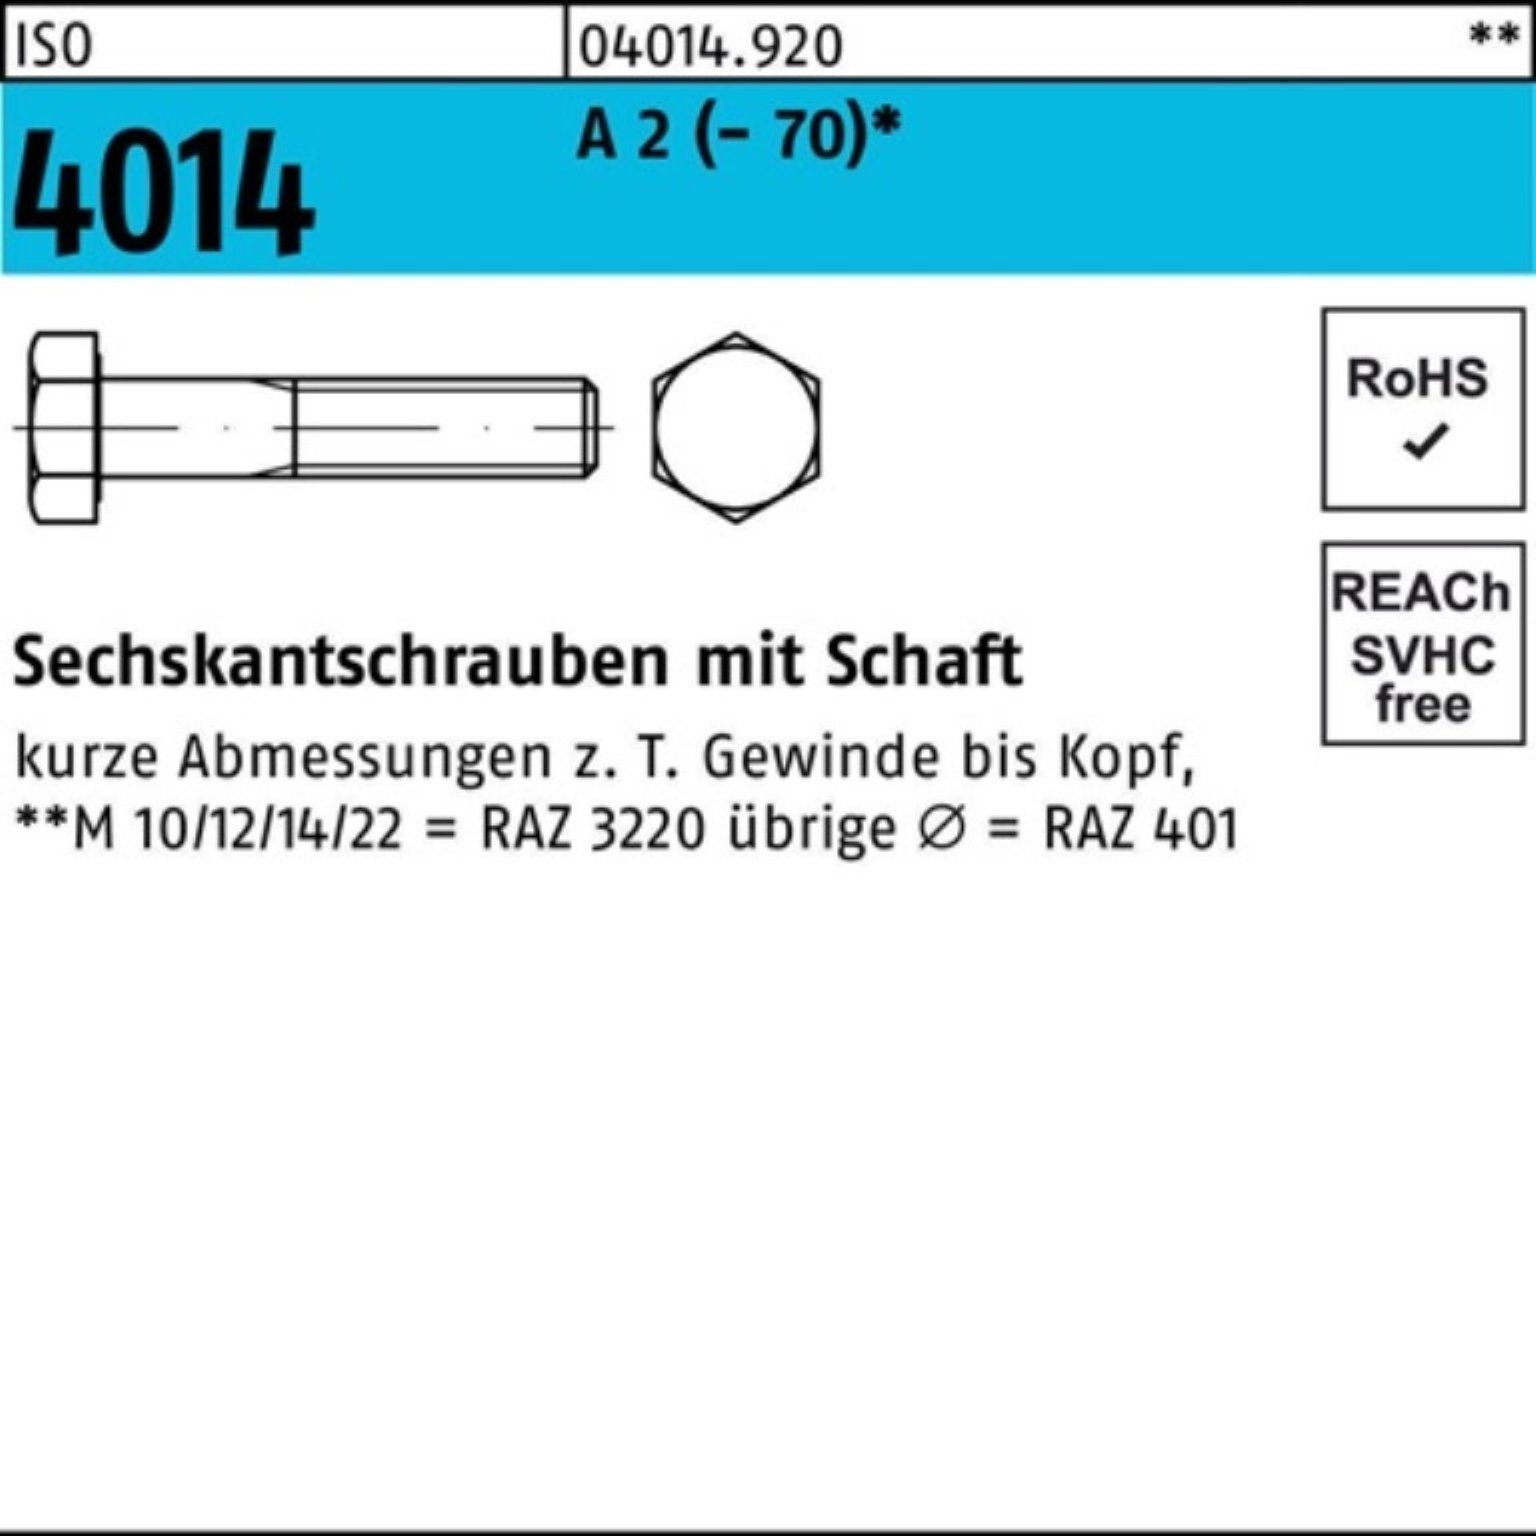 Bufab Sechskantschraube 100er Pack Sechskantschraube ISO 4014 Schaft M27x 100 A 2 (70) 1 St